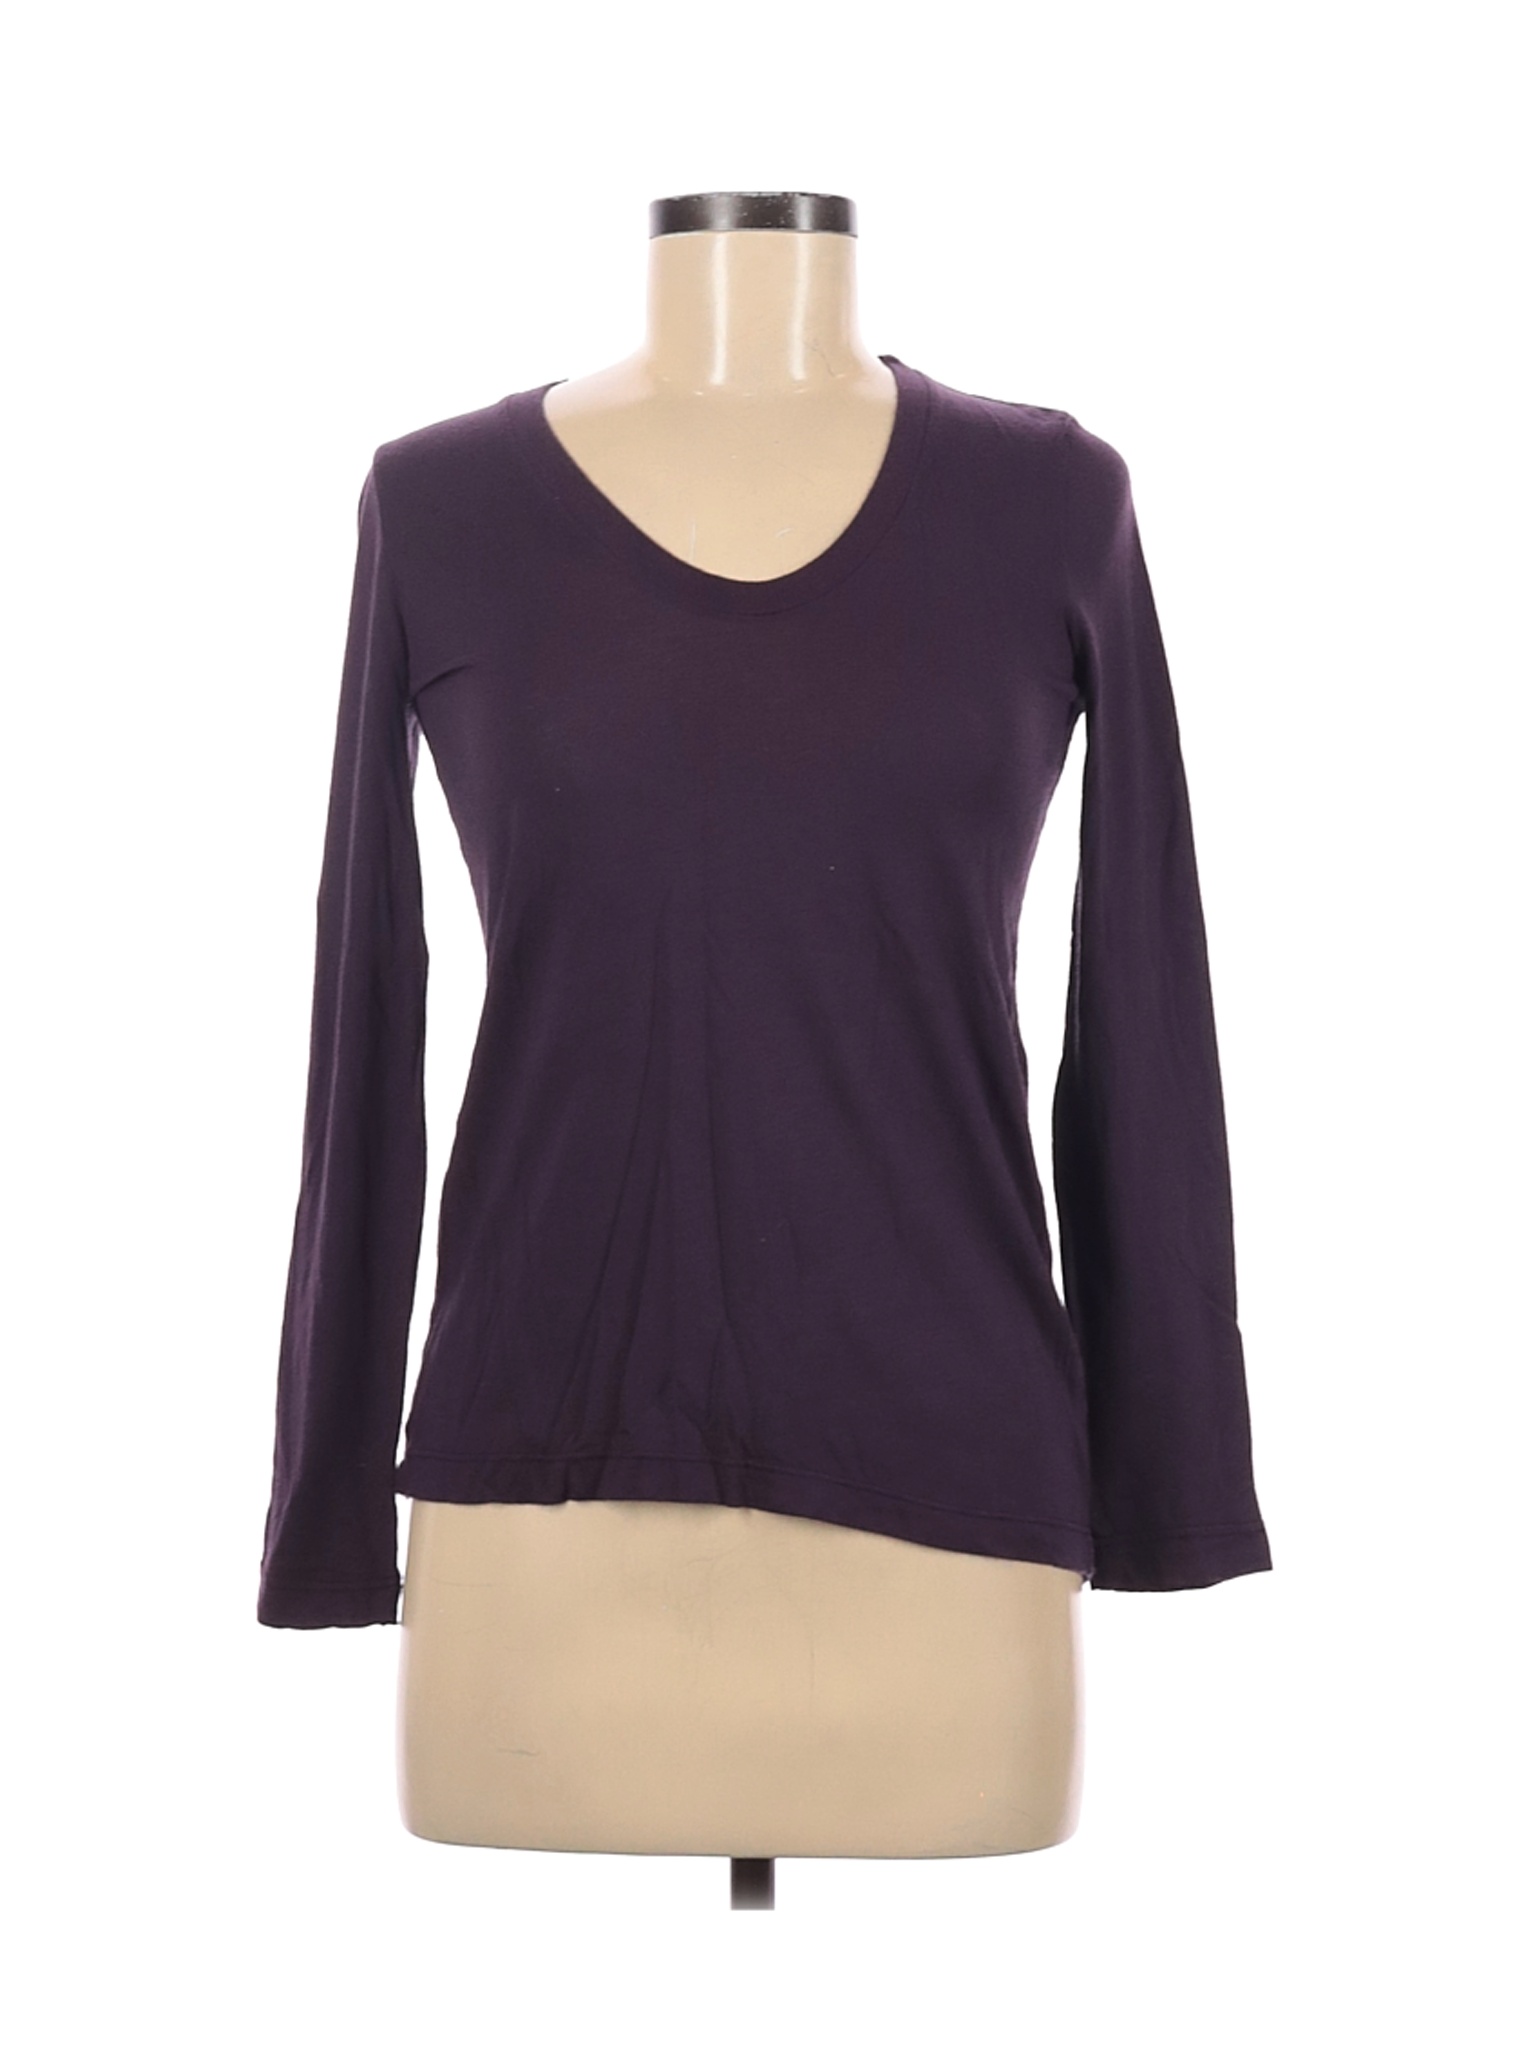 Splendid Women Purple Long Sleeve T-Shirt XS | eBay